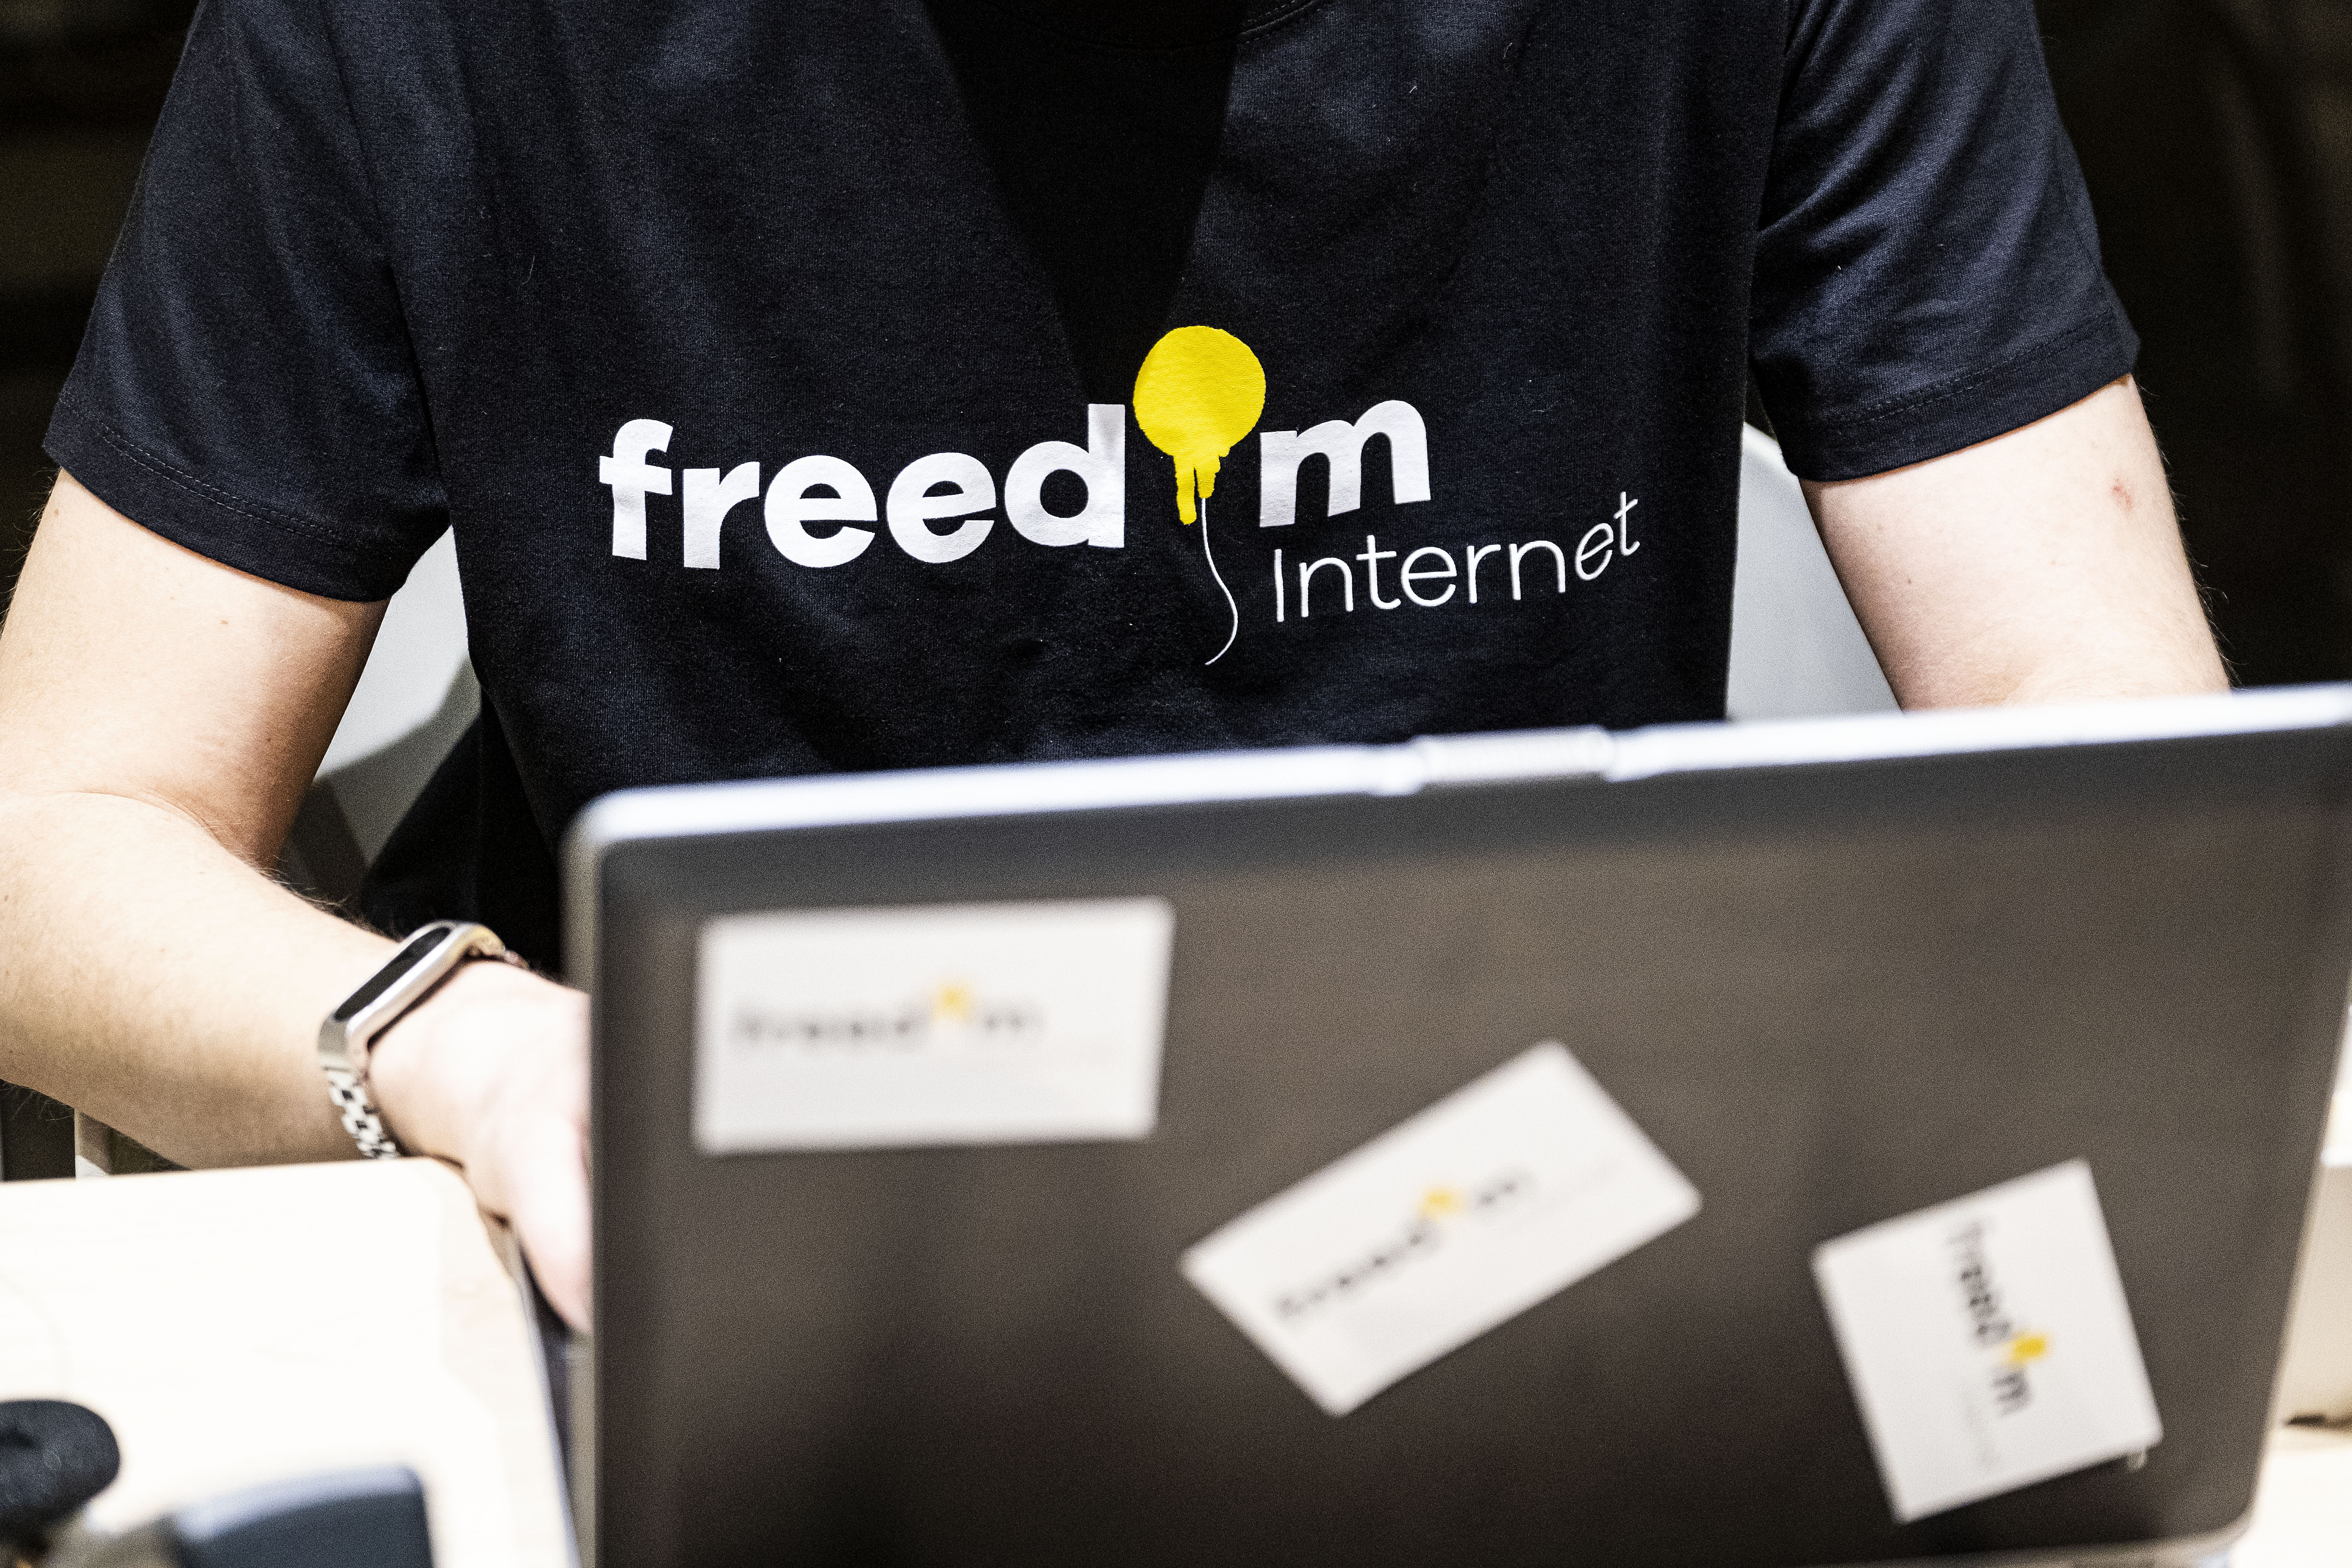 Freedom Internet wordt de naam van de nieuwe internetprovider van de actiegroep die XS4ALL in de lucht wilde houden.